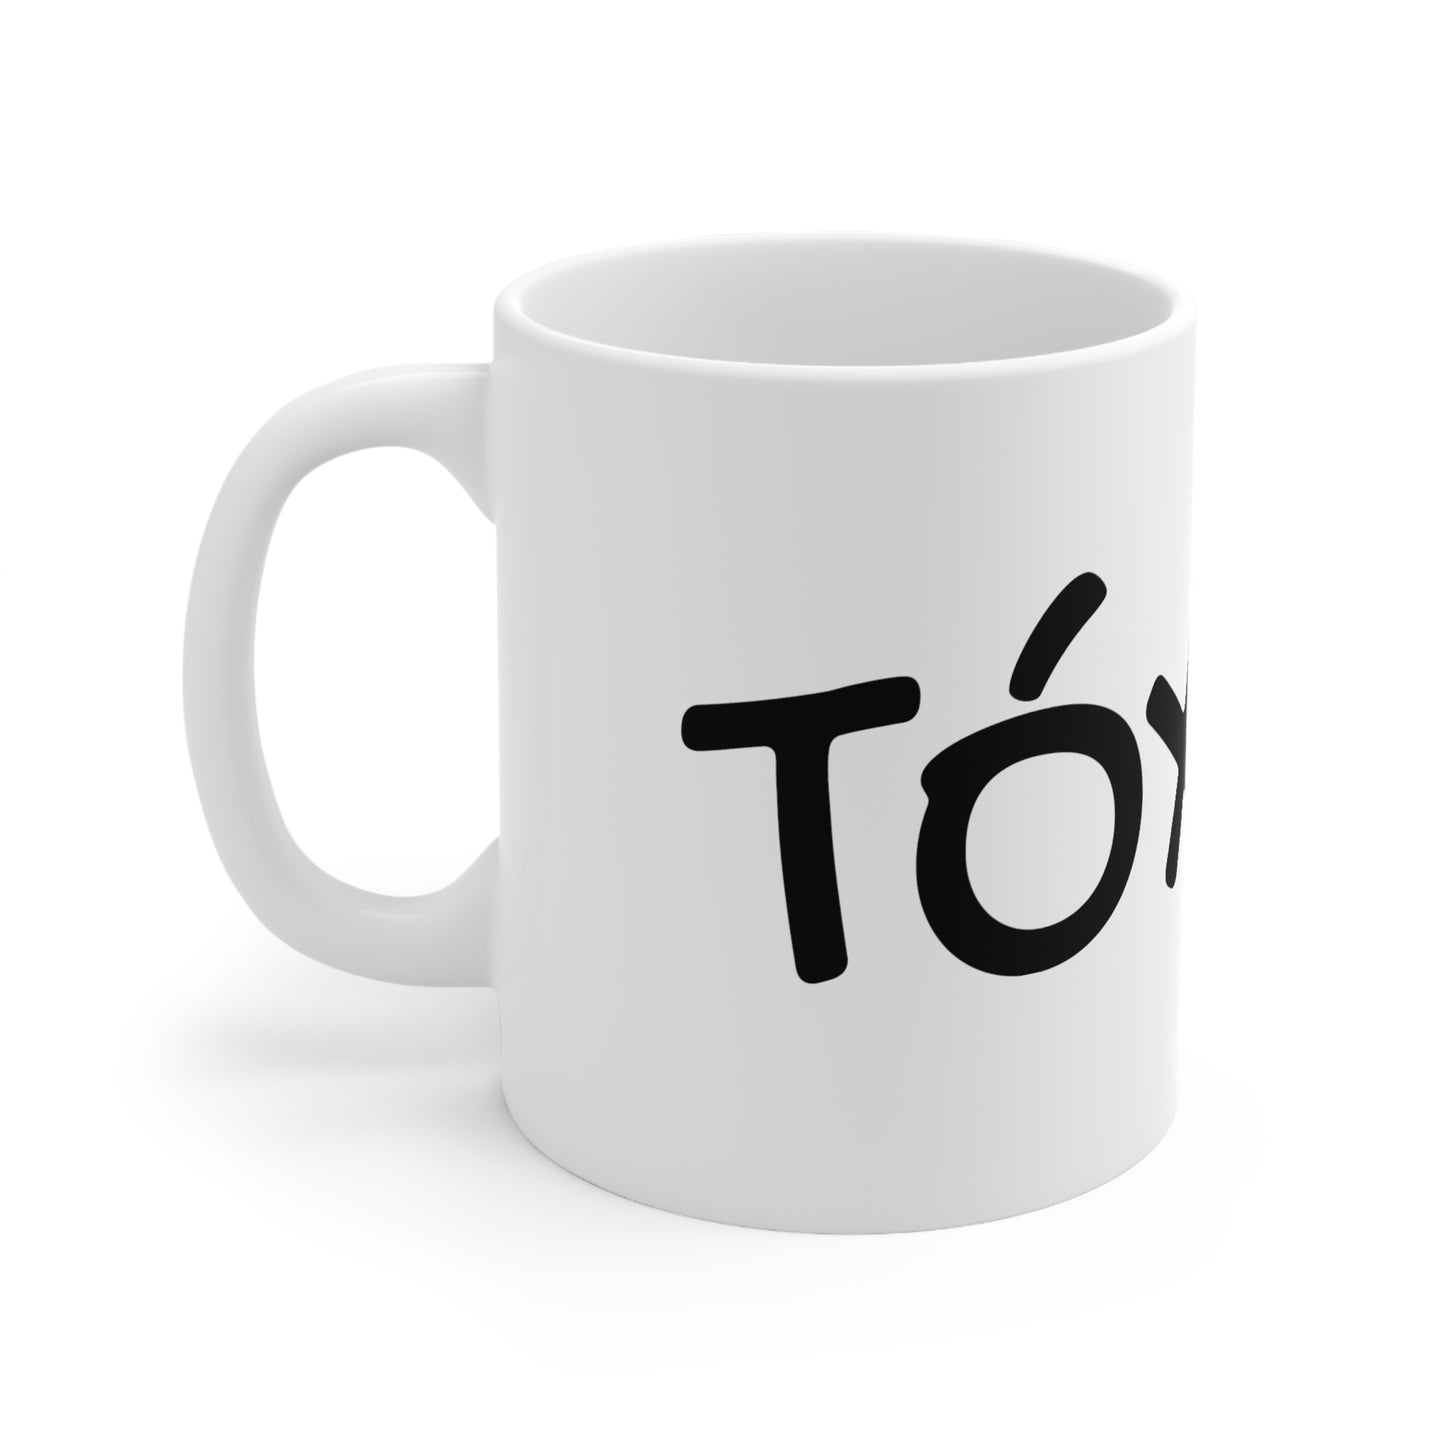 TOXICA Ceramic Mug 11oz